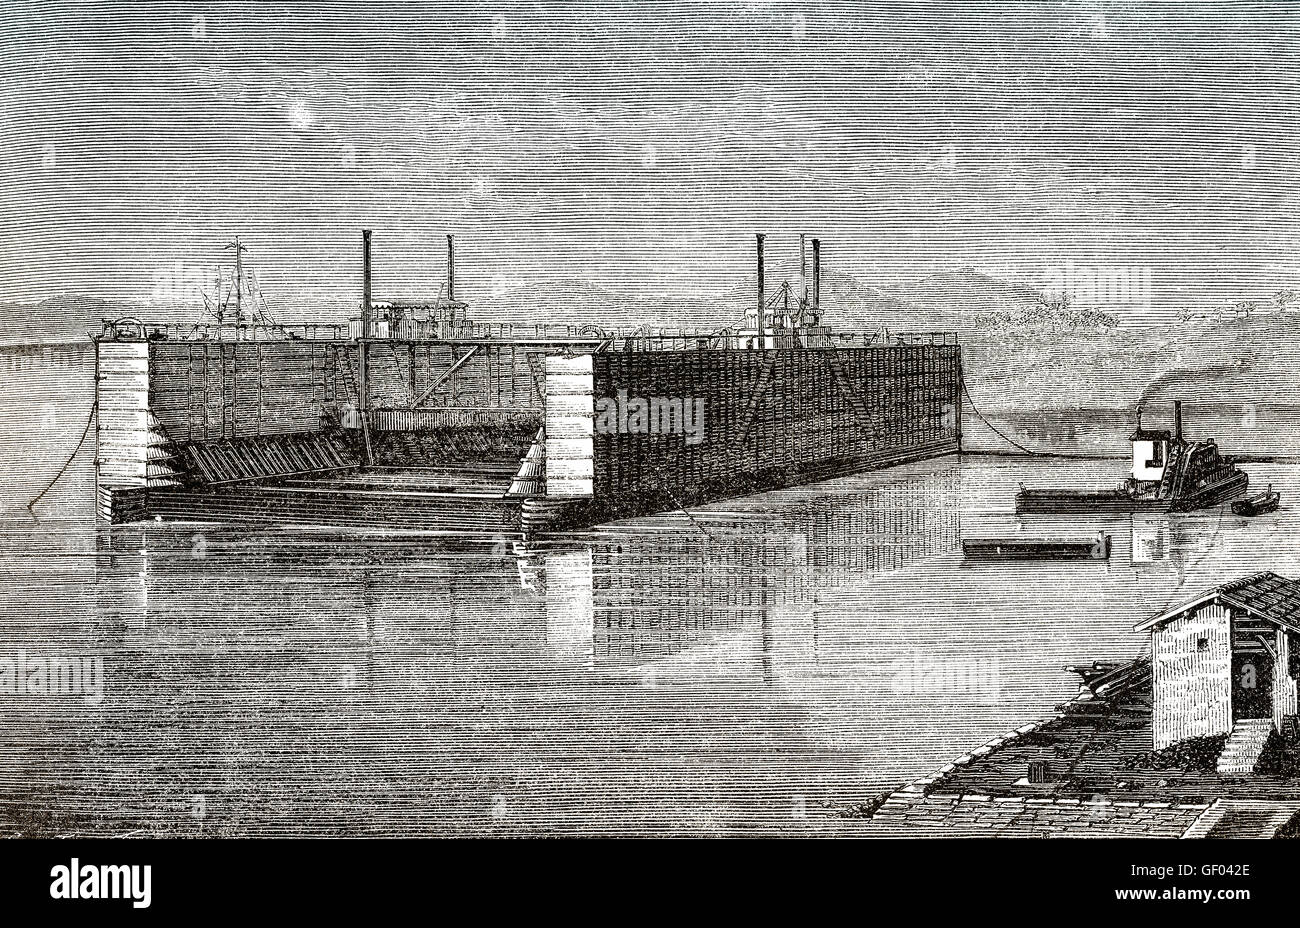 Ein Trockendock Schiff reparieren Anlage, Suez, Ägypten, 19. Jahrhundert Stockfoto